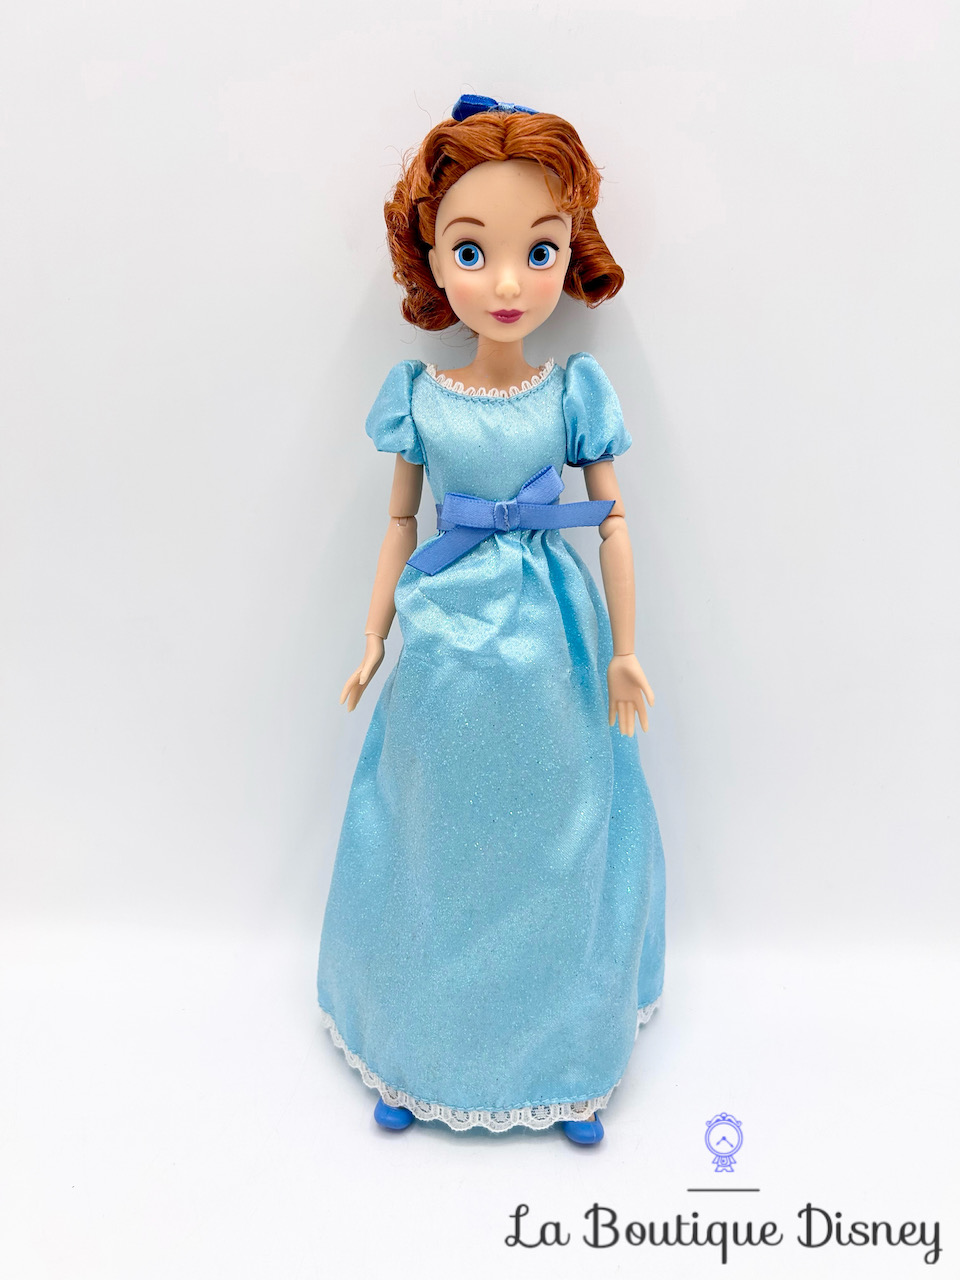 Poupée Wendy Peter Pan Disney Store 2020 mannequin robe bleu 26 cm